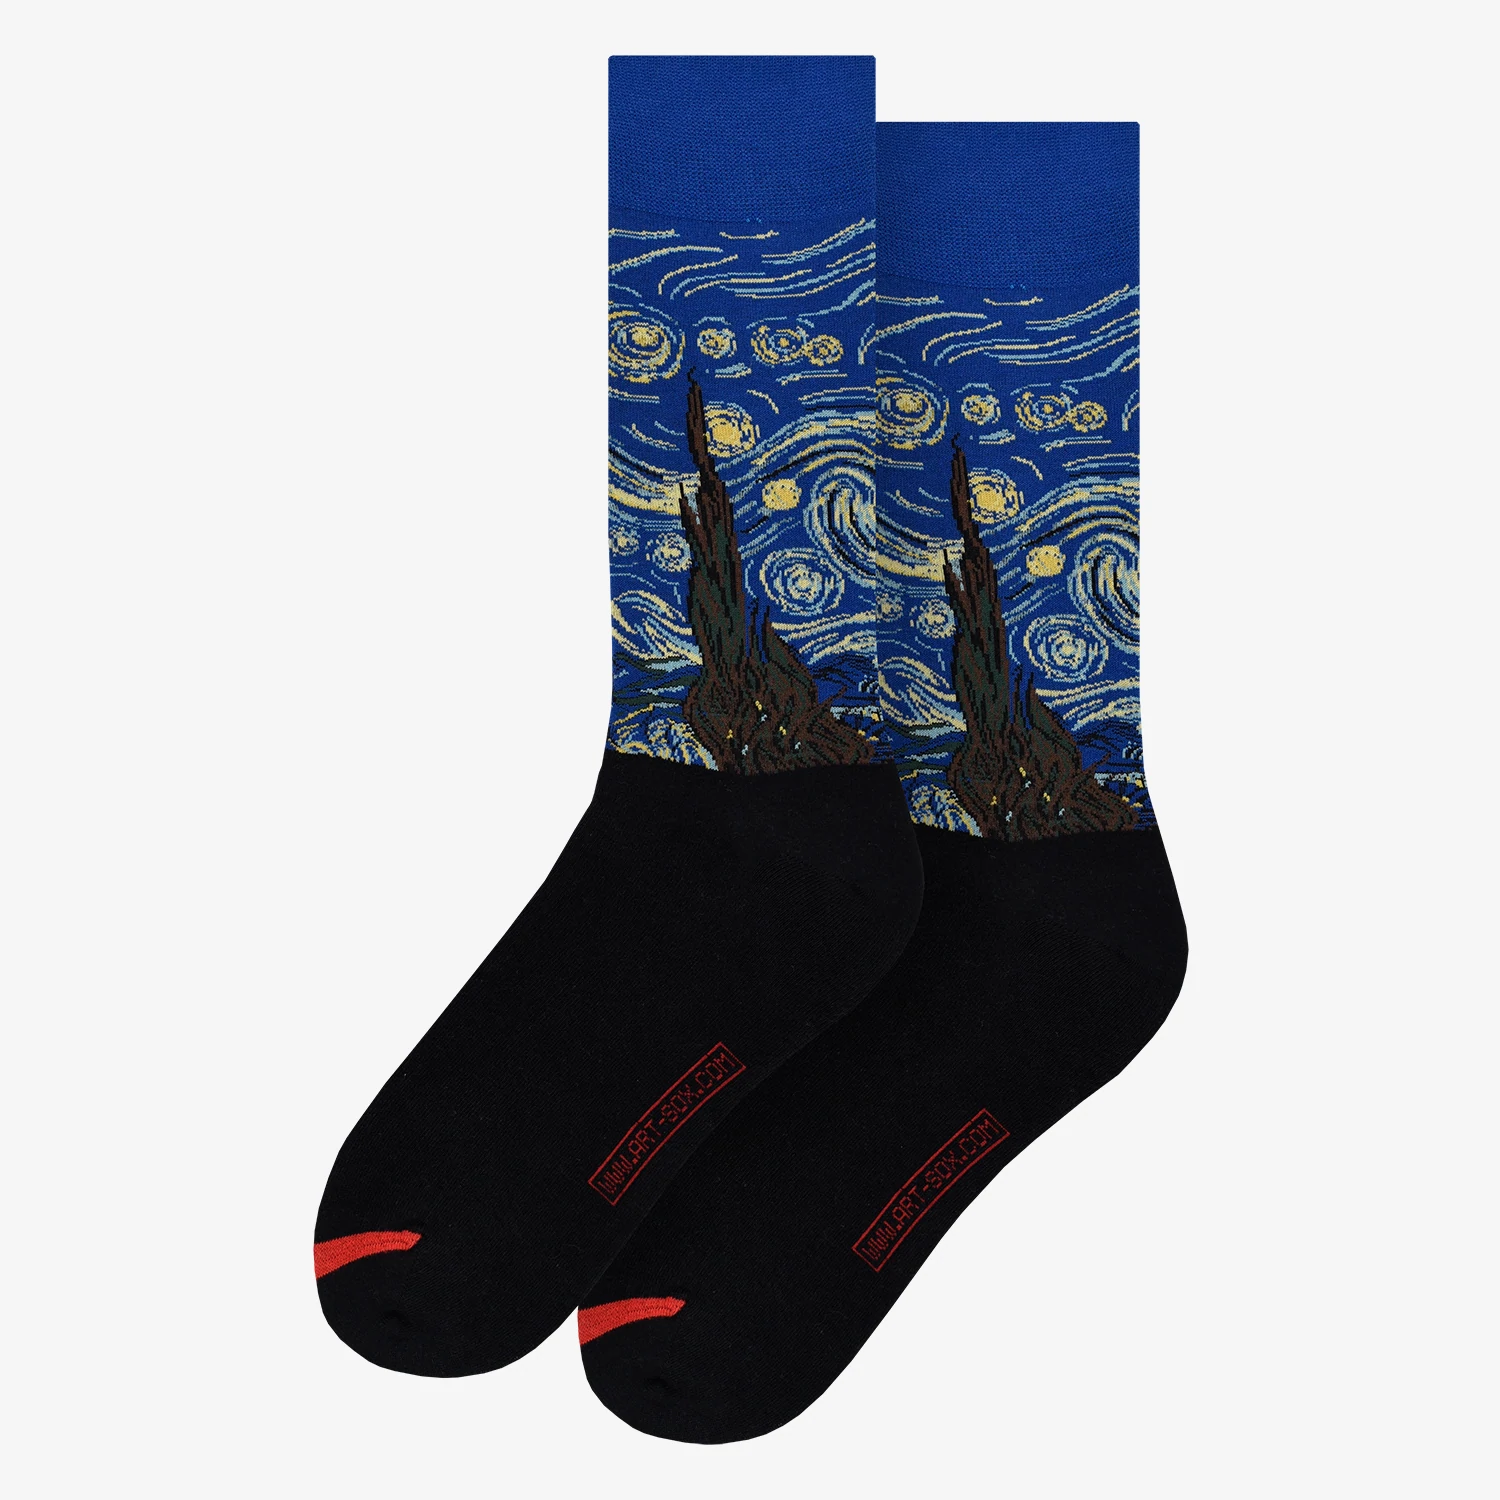 Socken; Vincent van Gogh - Starry Night; Baumwolle (80%), Polyamid (18%), Elastan (2%); blau, braun,  gelb, schwarz; 40-46; MuseARTa